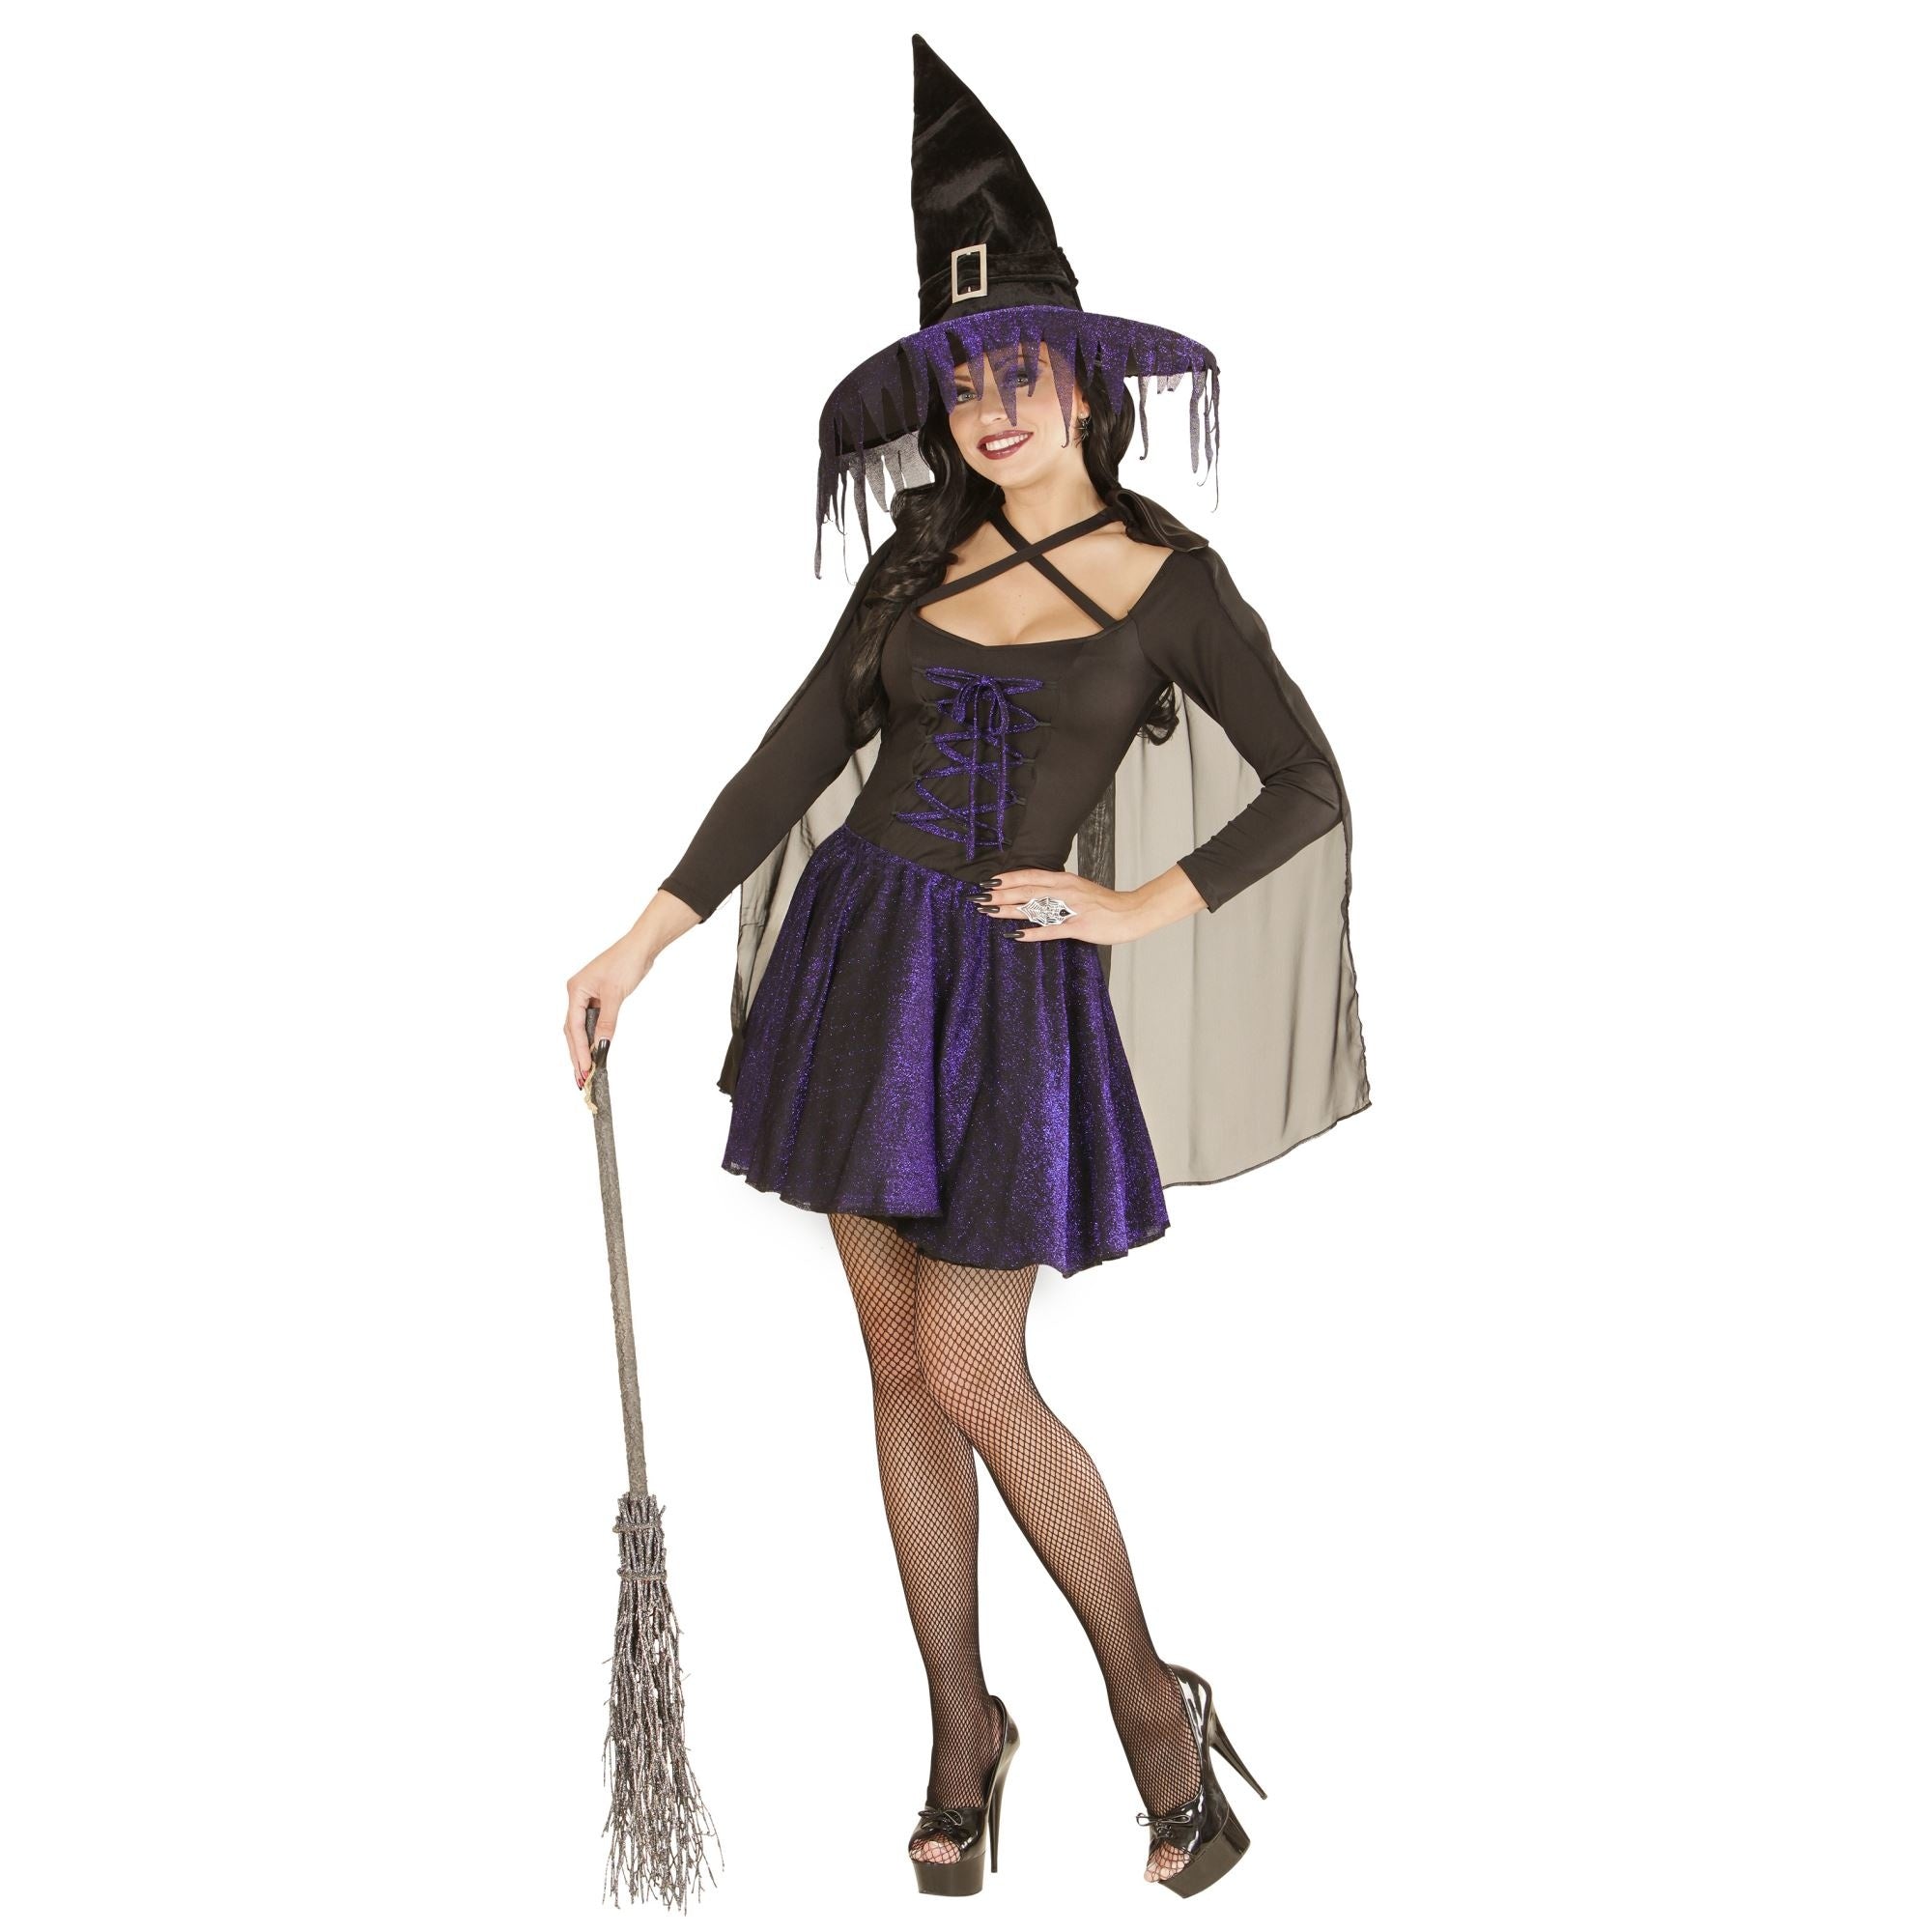 "Blauwzwart heksen Halloween kostuum voor dames - Verkleedkleding - Large"